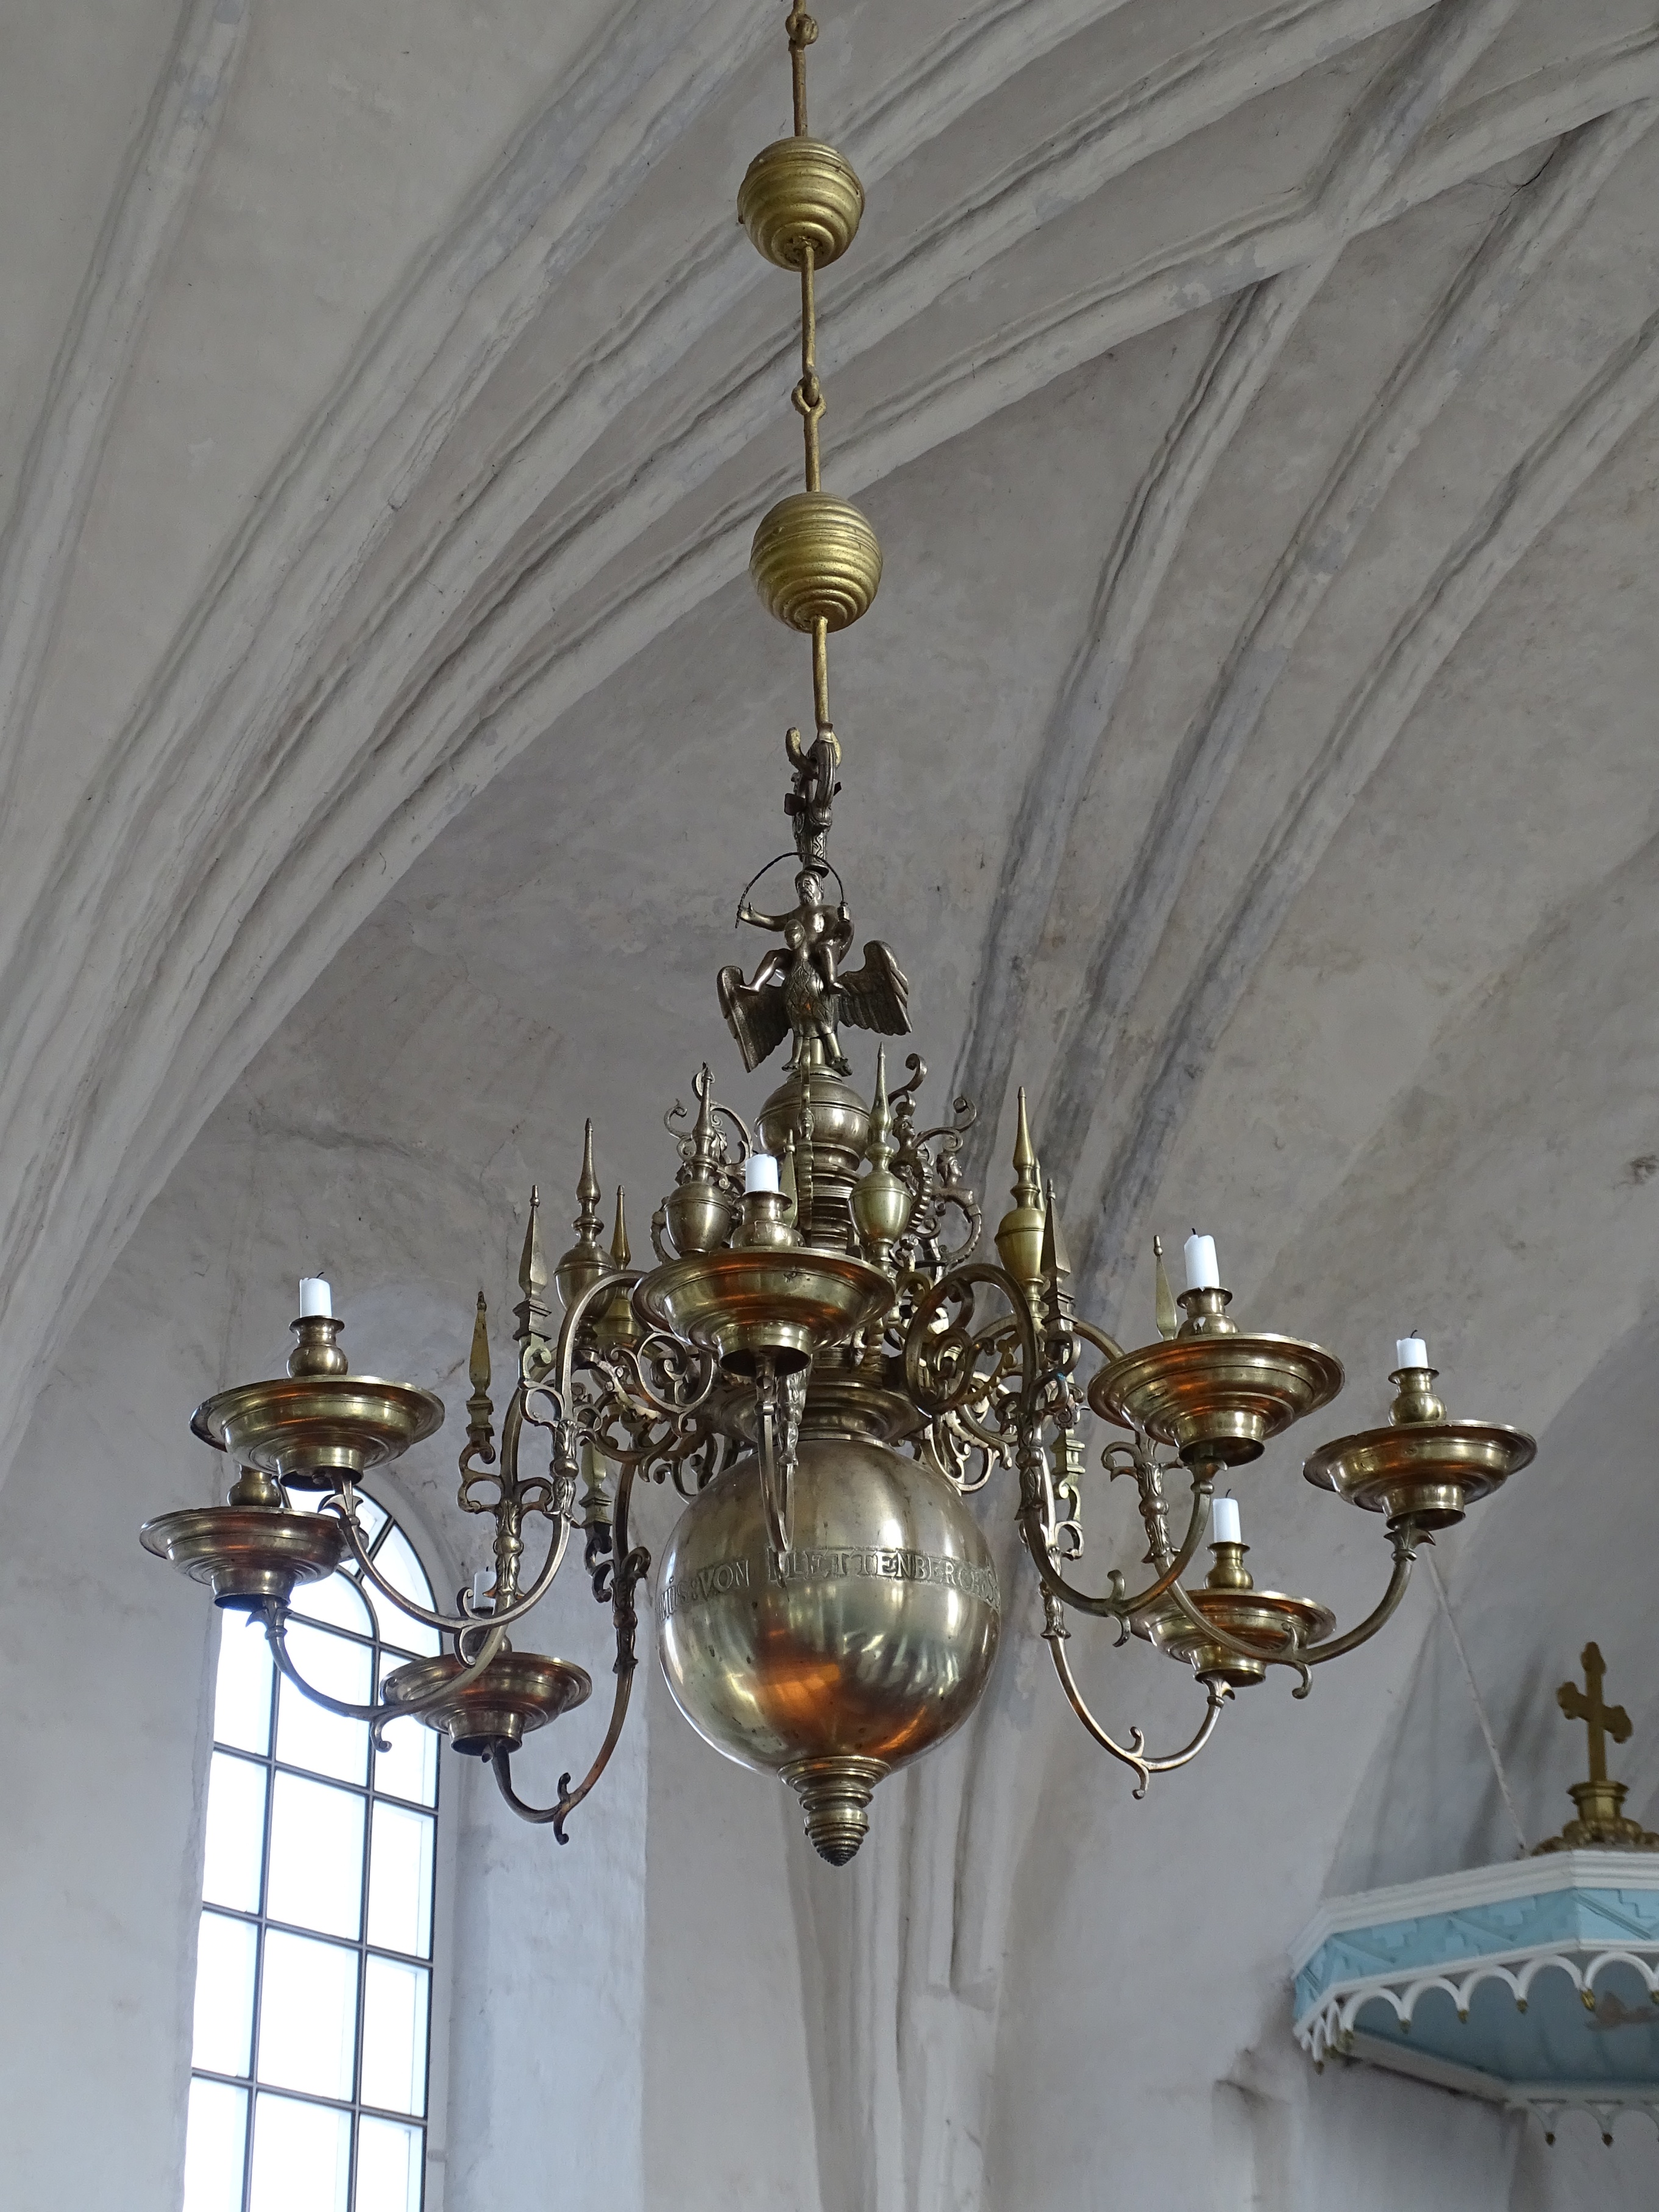 Chandelier, 1647, Nereta Evangelical Lutheran Church. Photo by Alantė Valtaitė-Gagač , 2022